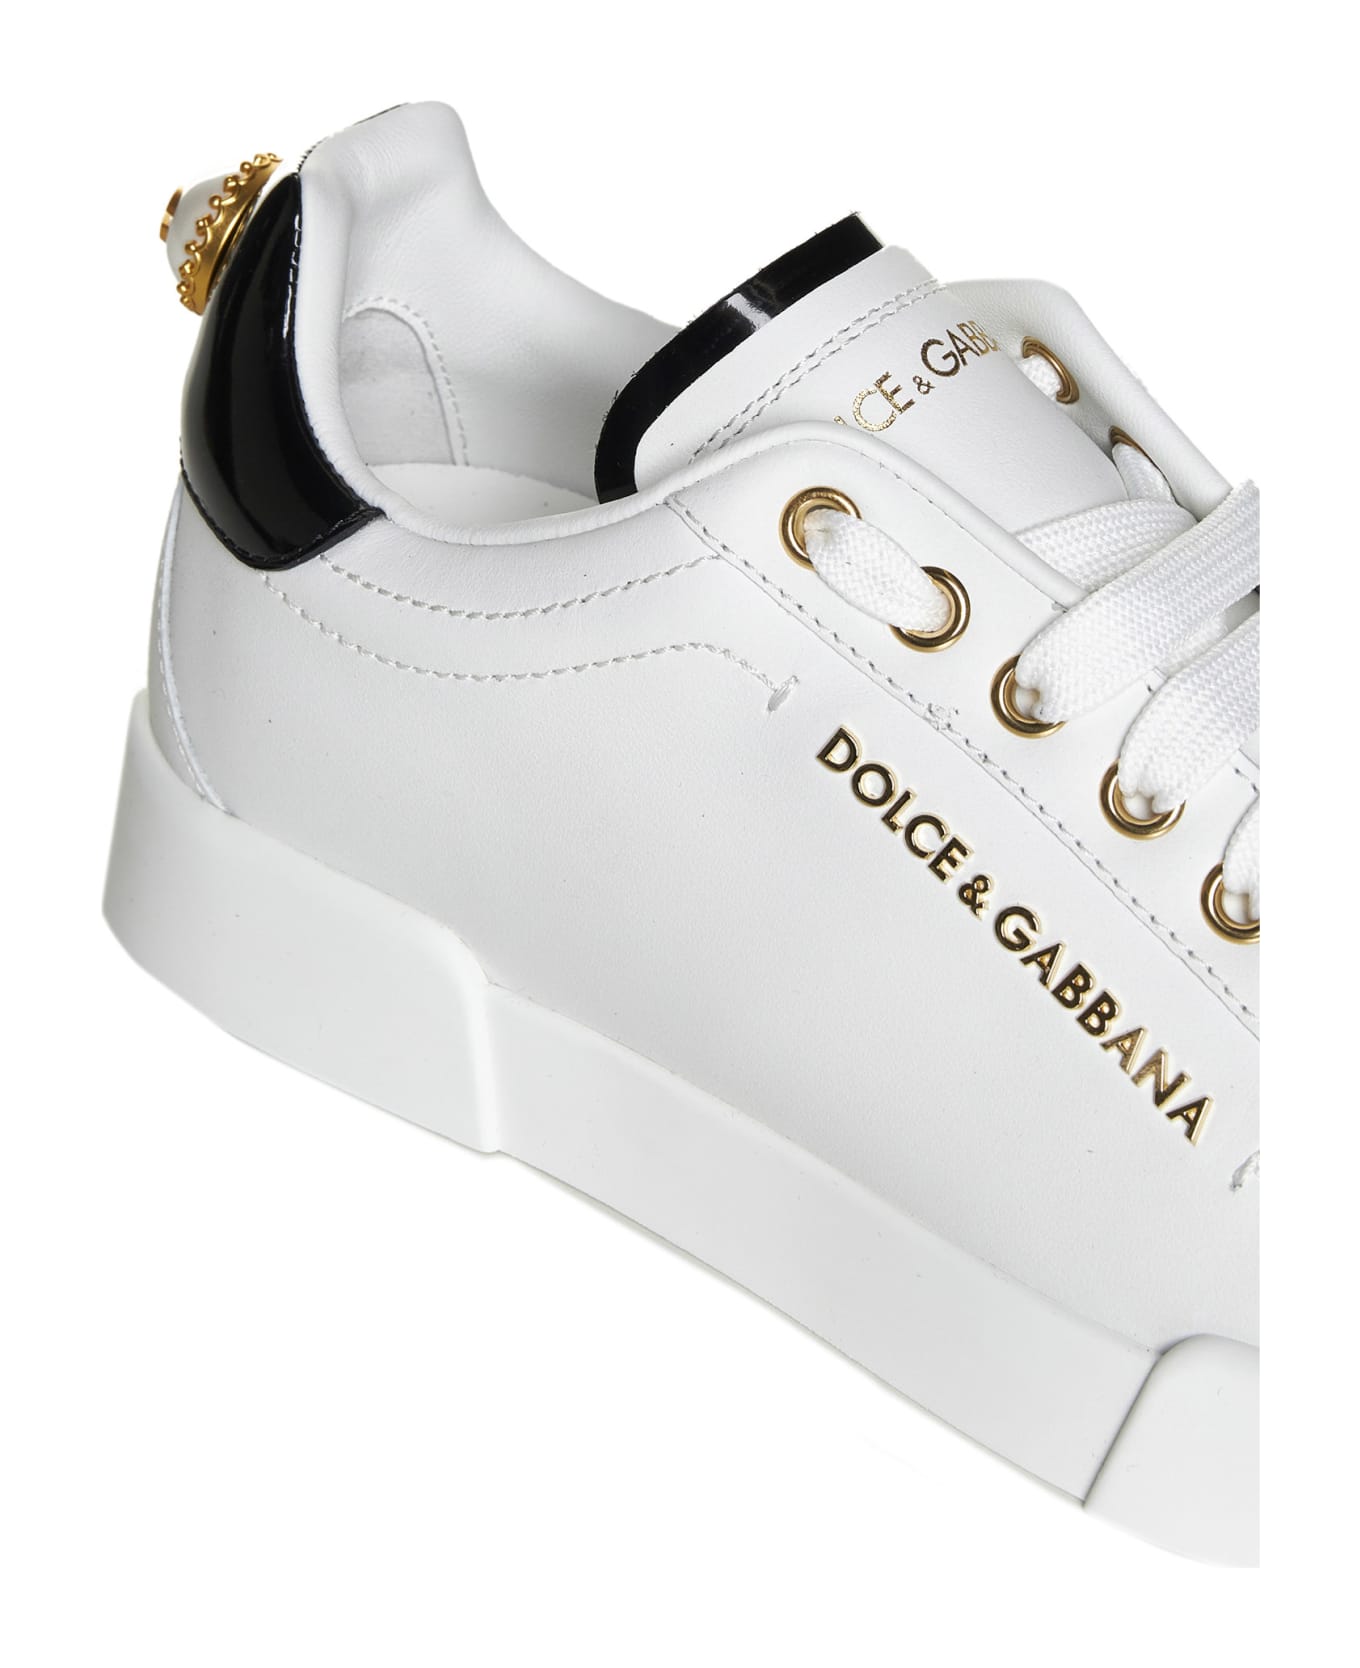 Dolce & Gabbana Portofino Sneakers - White スニーカー